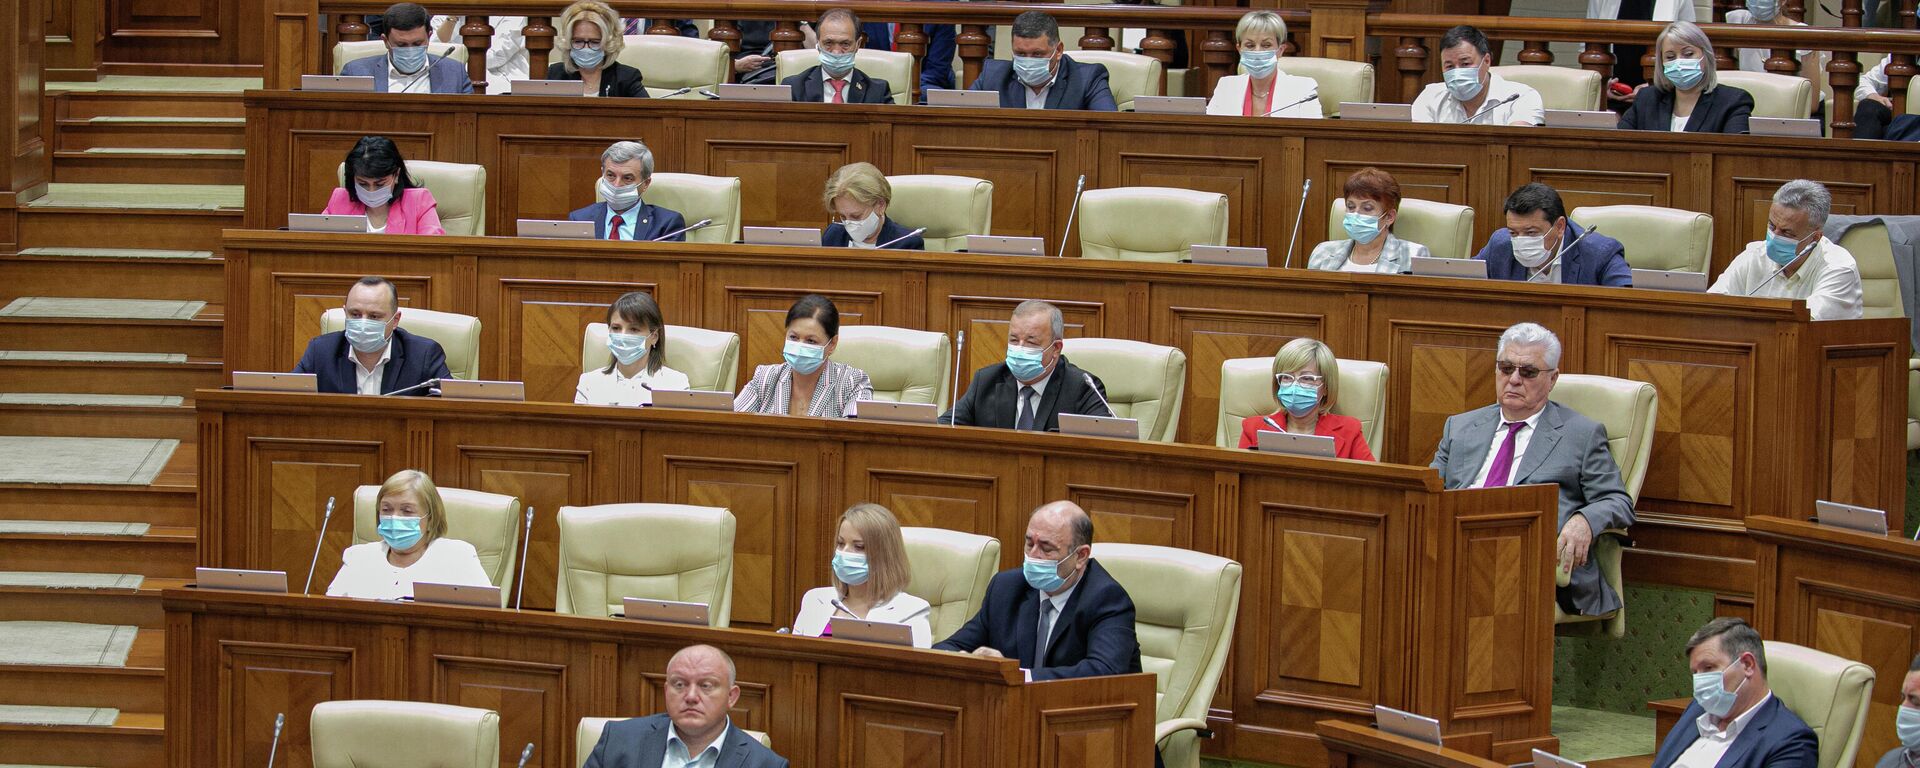 Ședința de constituire a Parlamentului de Legislatura a XI-a  - Sputnik Moldova, 1920, 30.09.2021